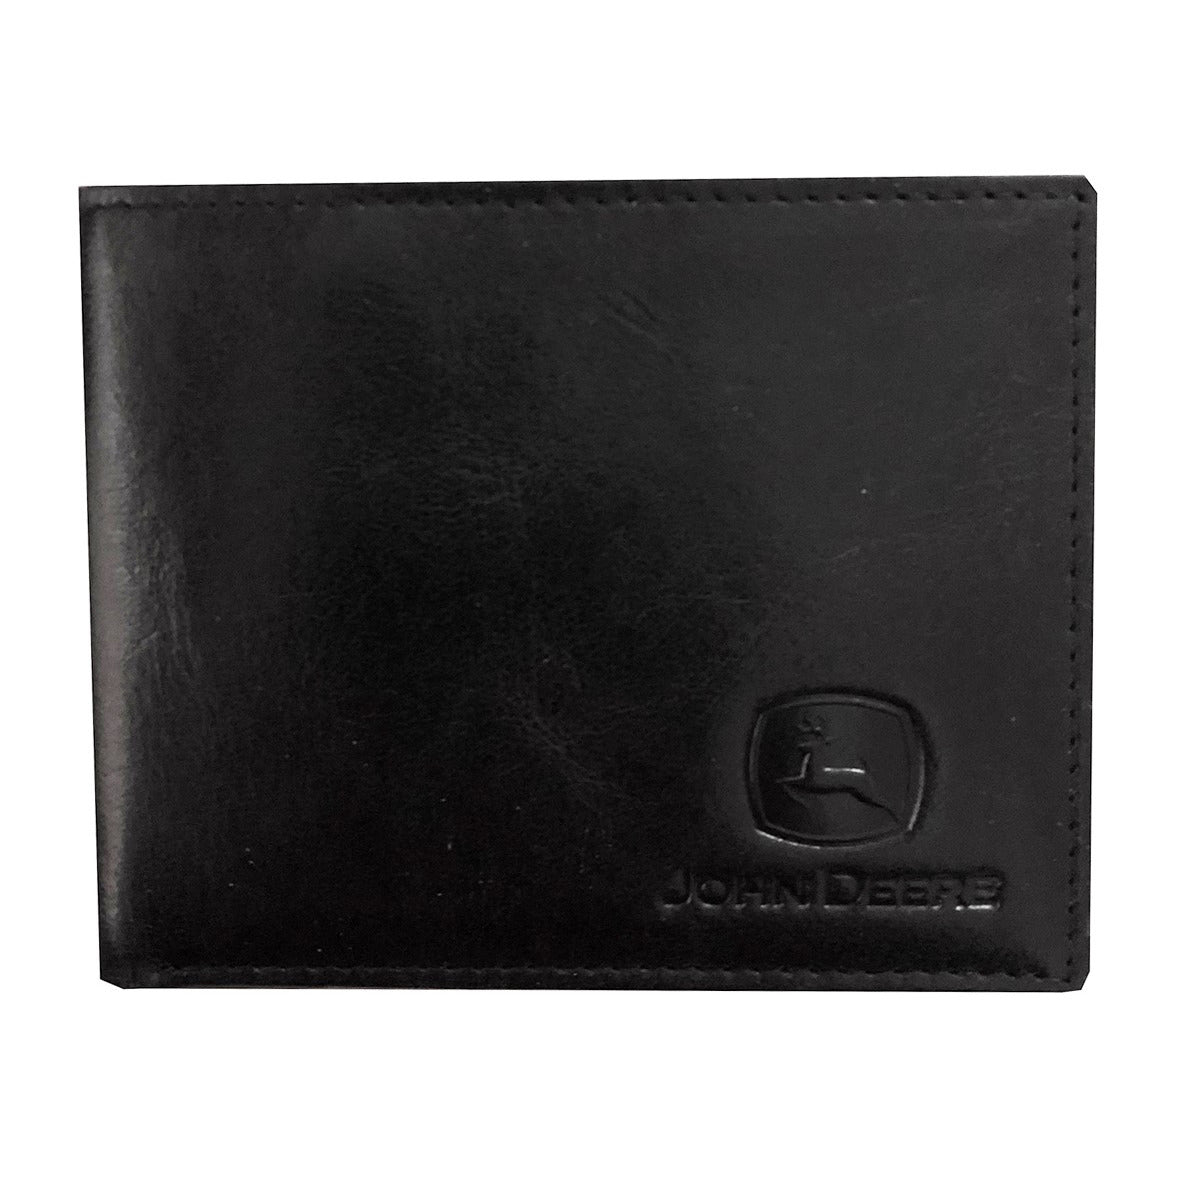 John Deere Crunch Leather Bi-fold (Black) Wallet - LP70604